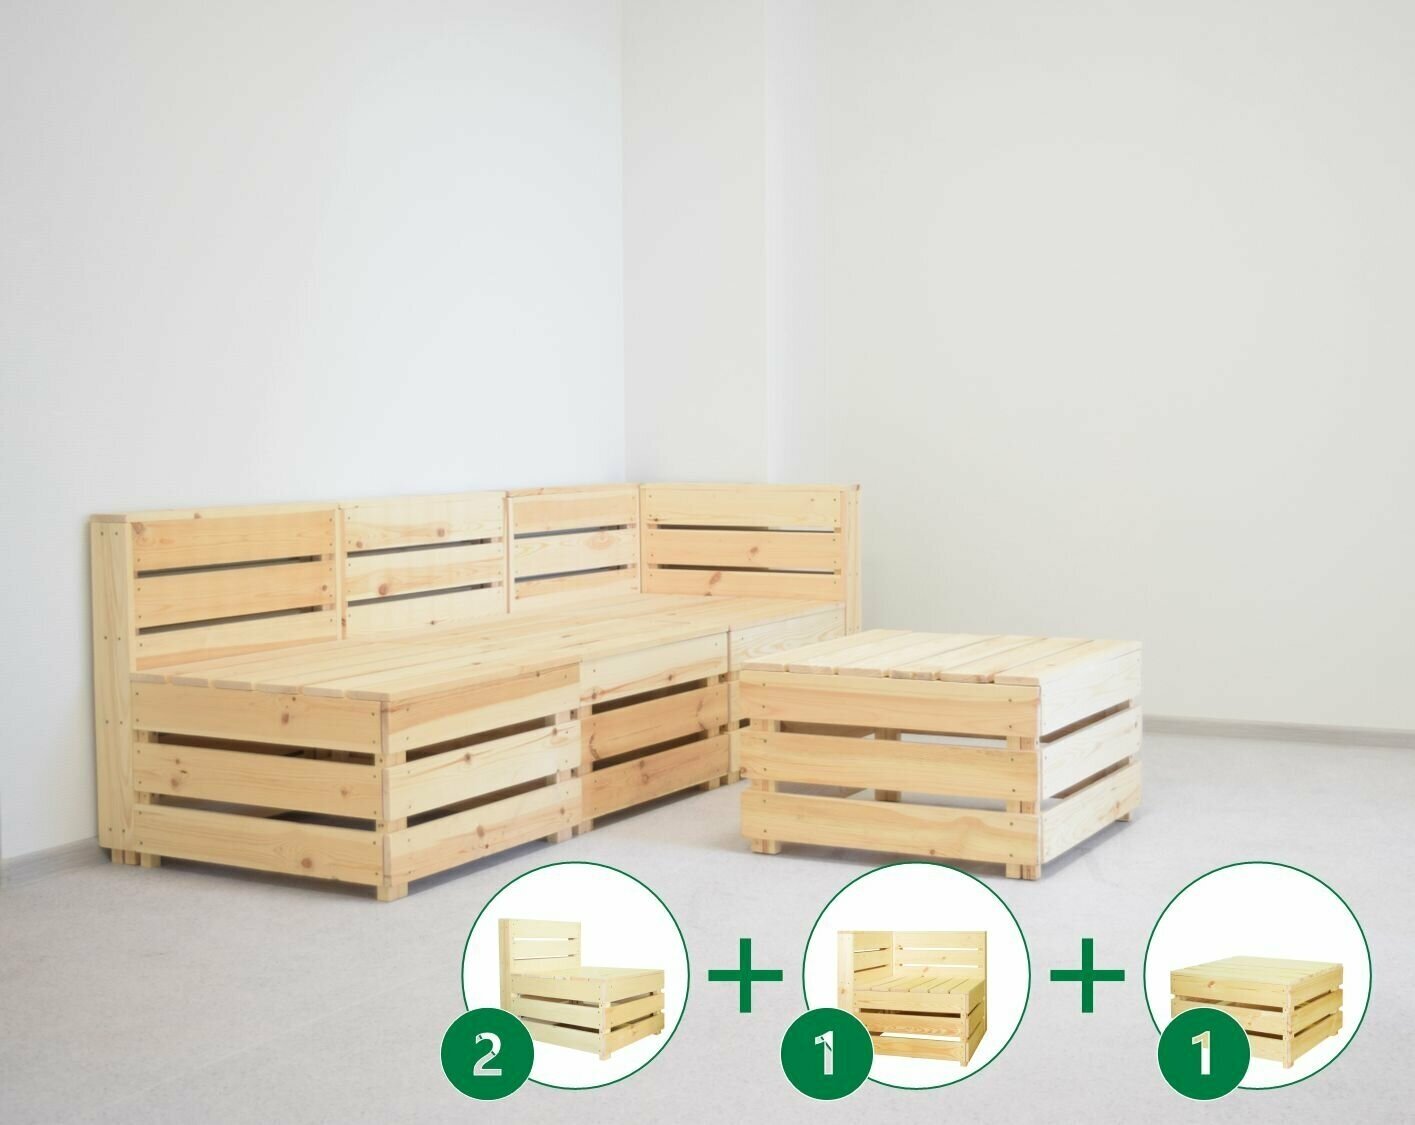 Комплект деревянной мебели №1 из 4х элементов для сада RUSTIC HOME / Диван со столом для 3х человек, 190х70 см